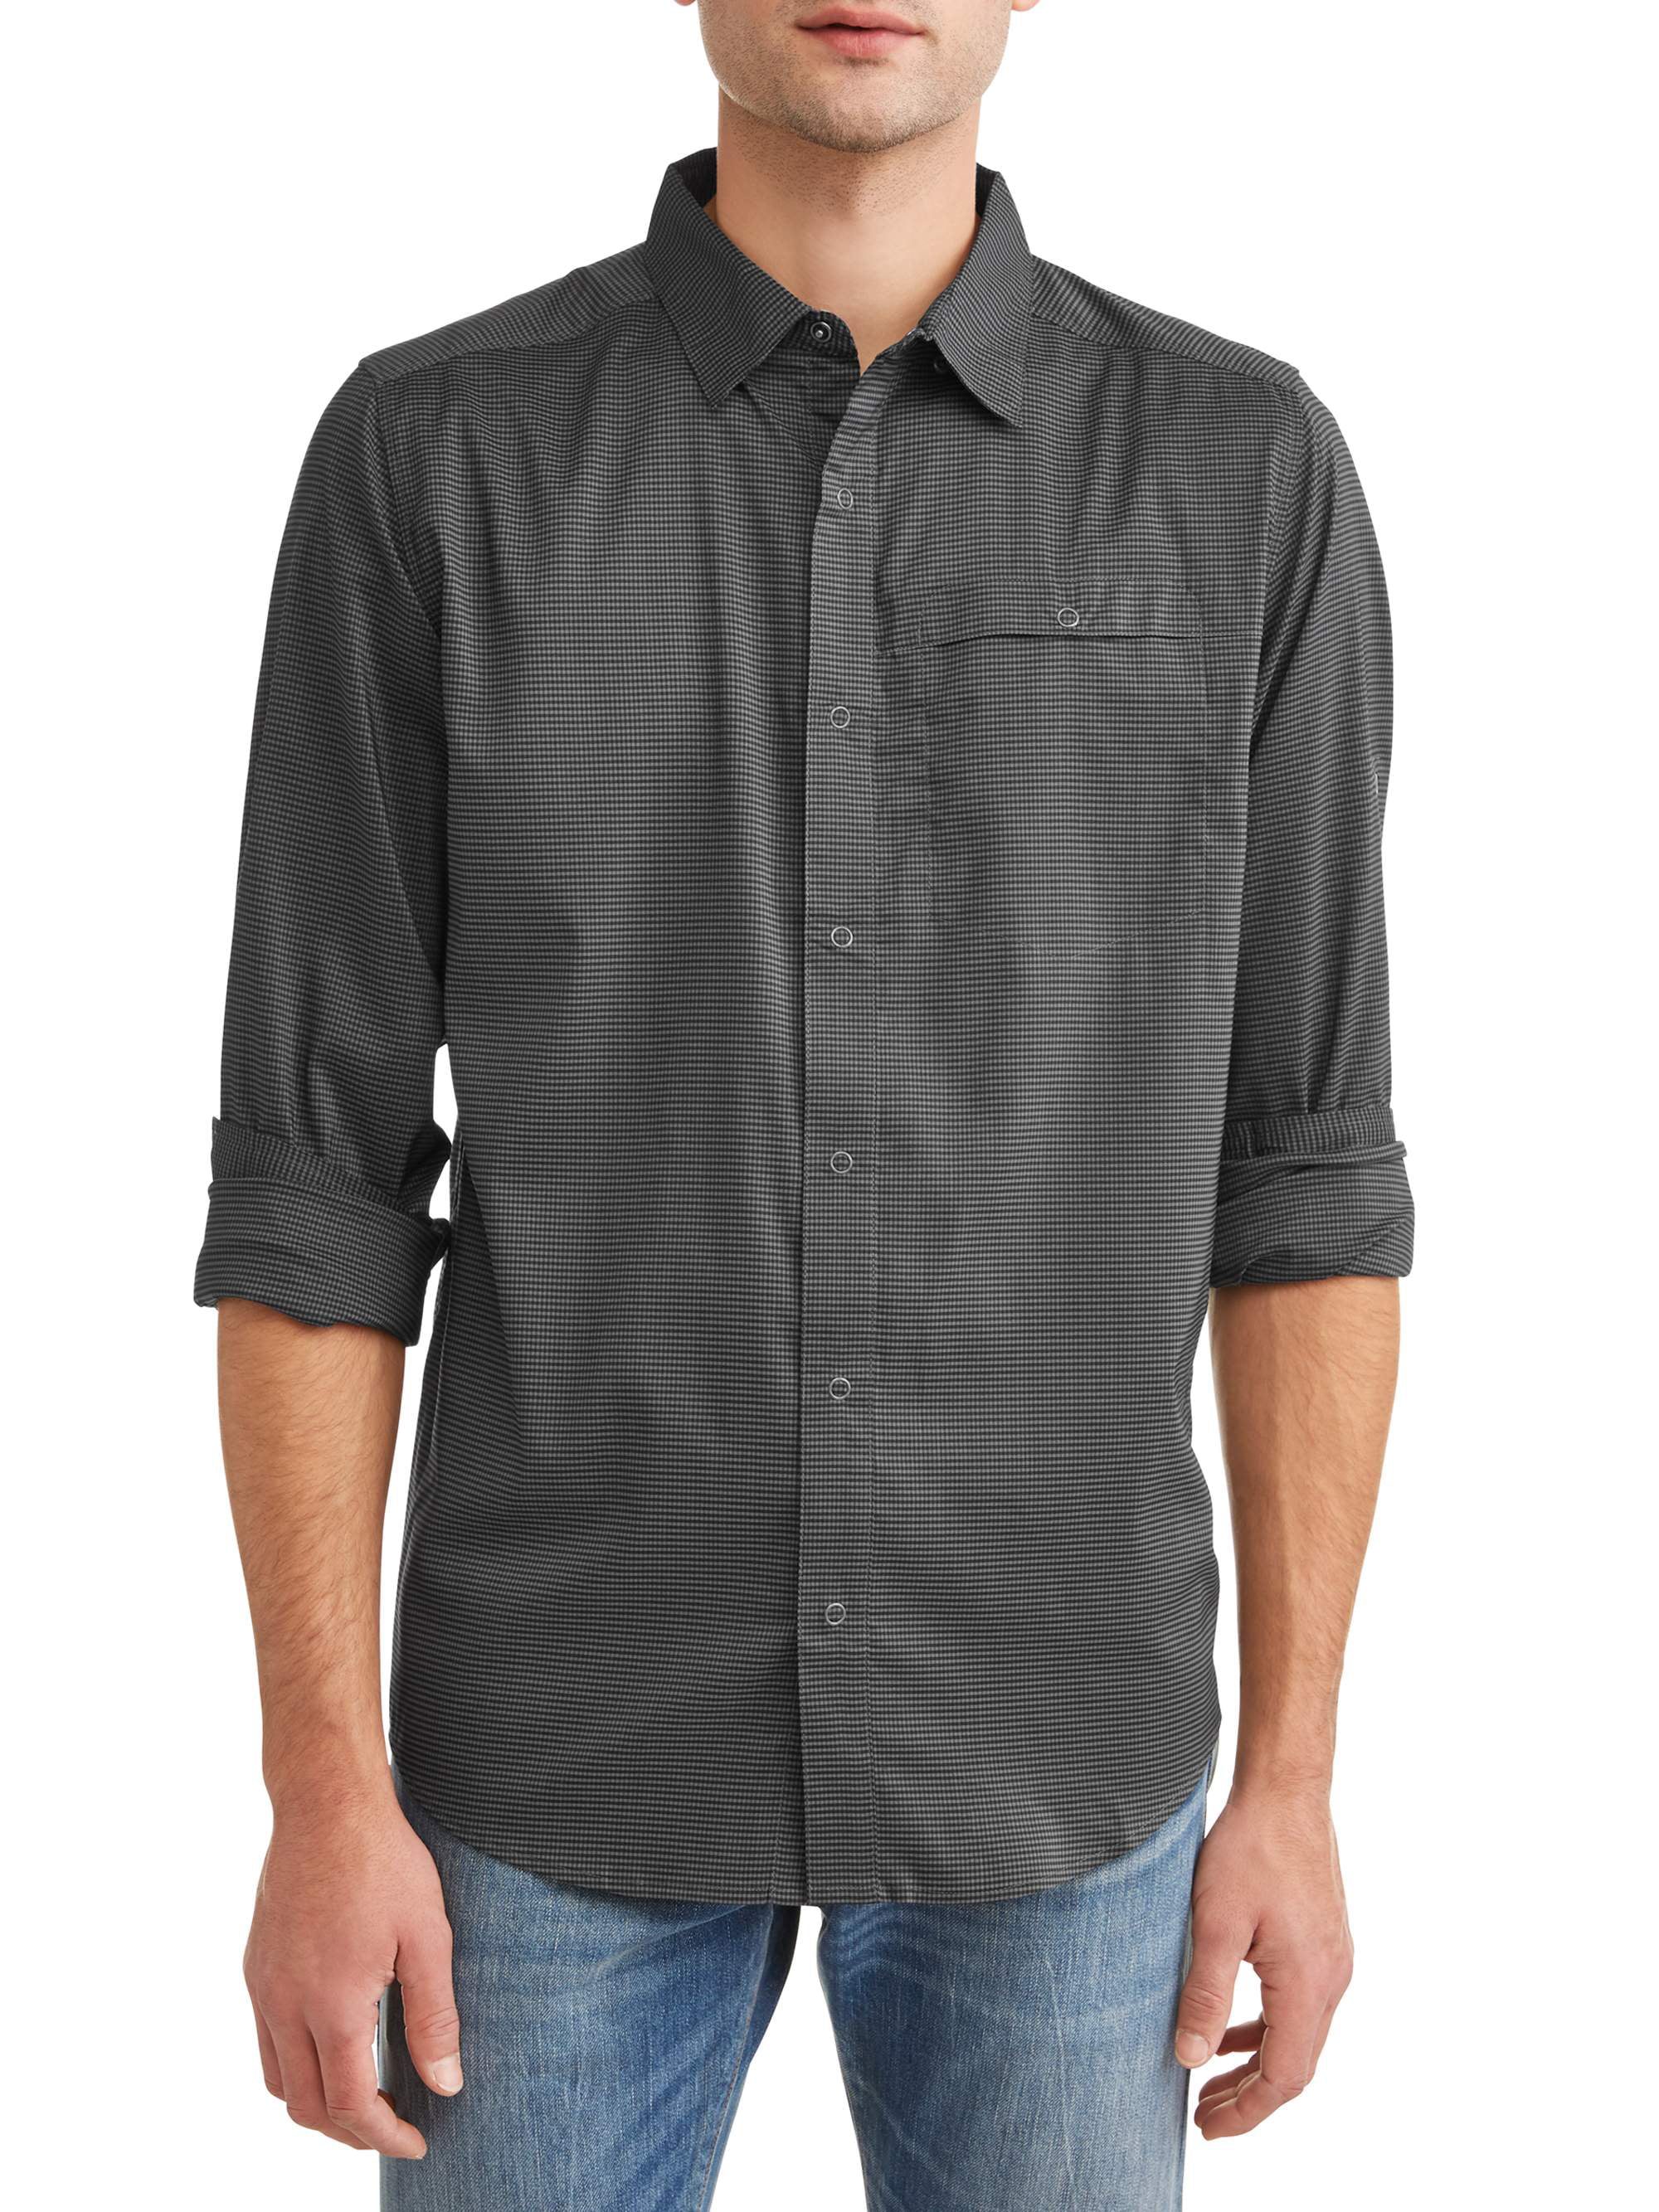 Swiss Tech Long Sleeve Outdoor Woven Shirt - Walmart.com